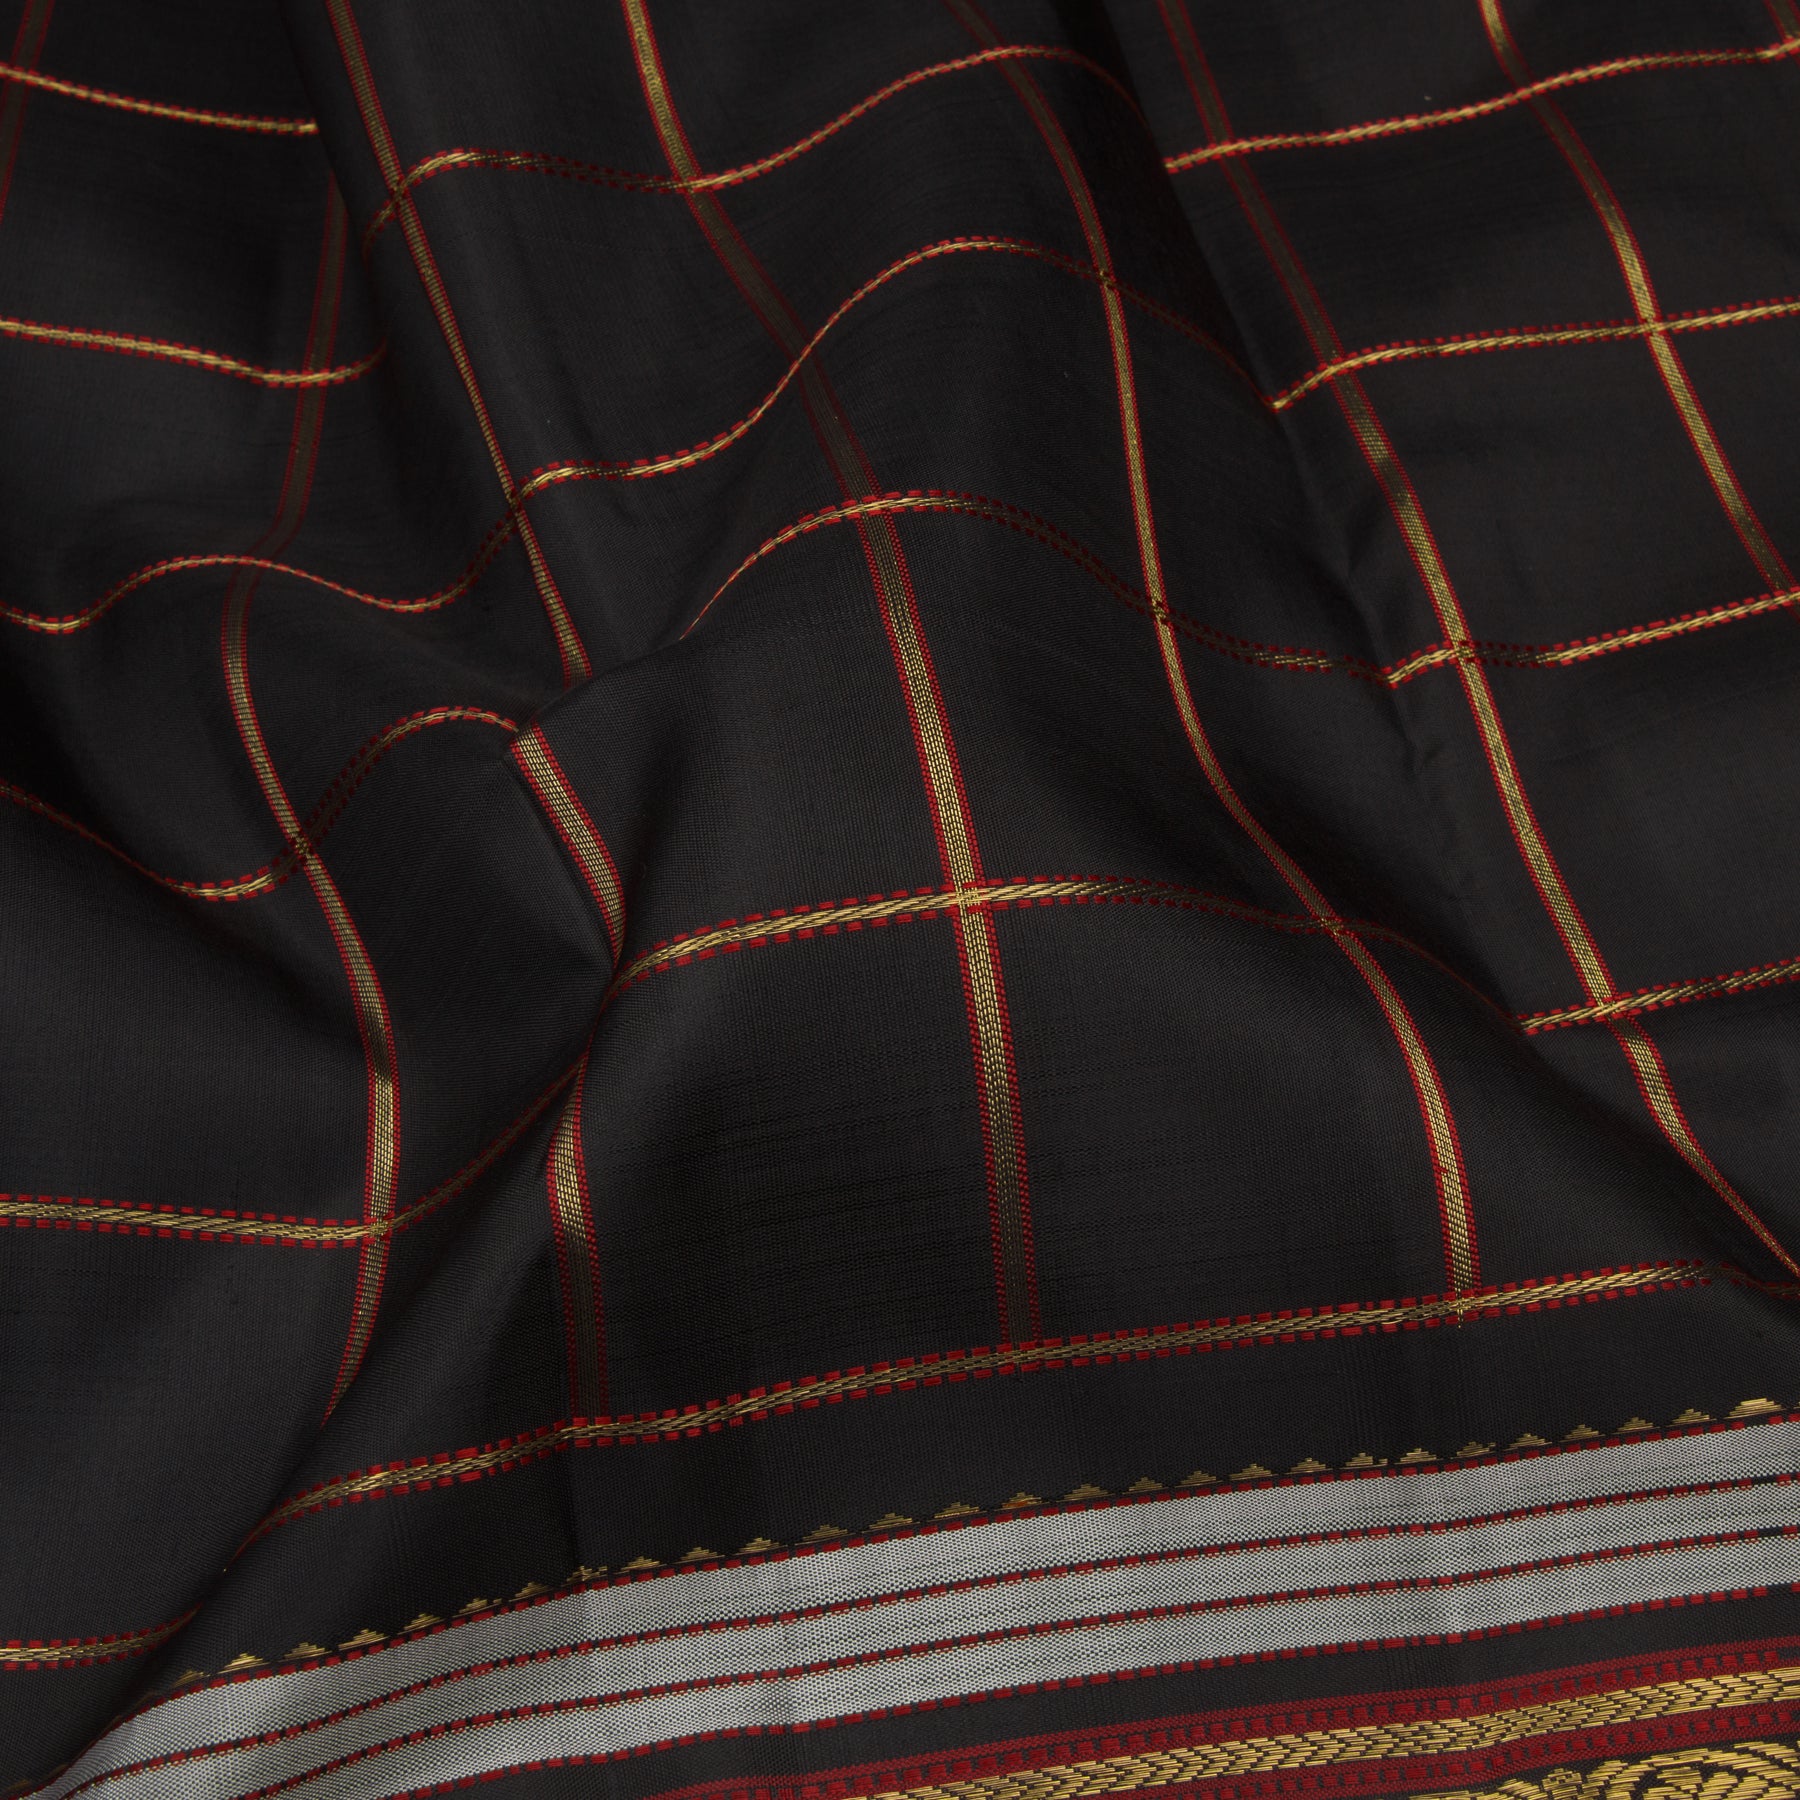 Kanakavalli Kanjivaram Silk Sari 23-040-HS001-09295 - Fabric View